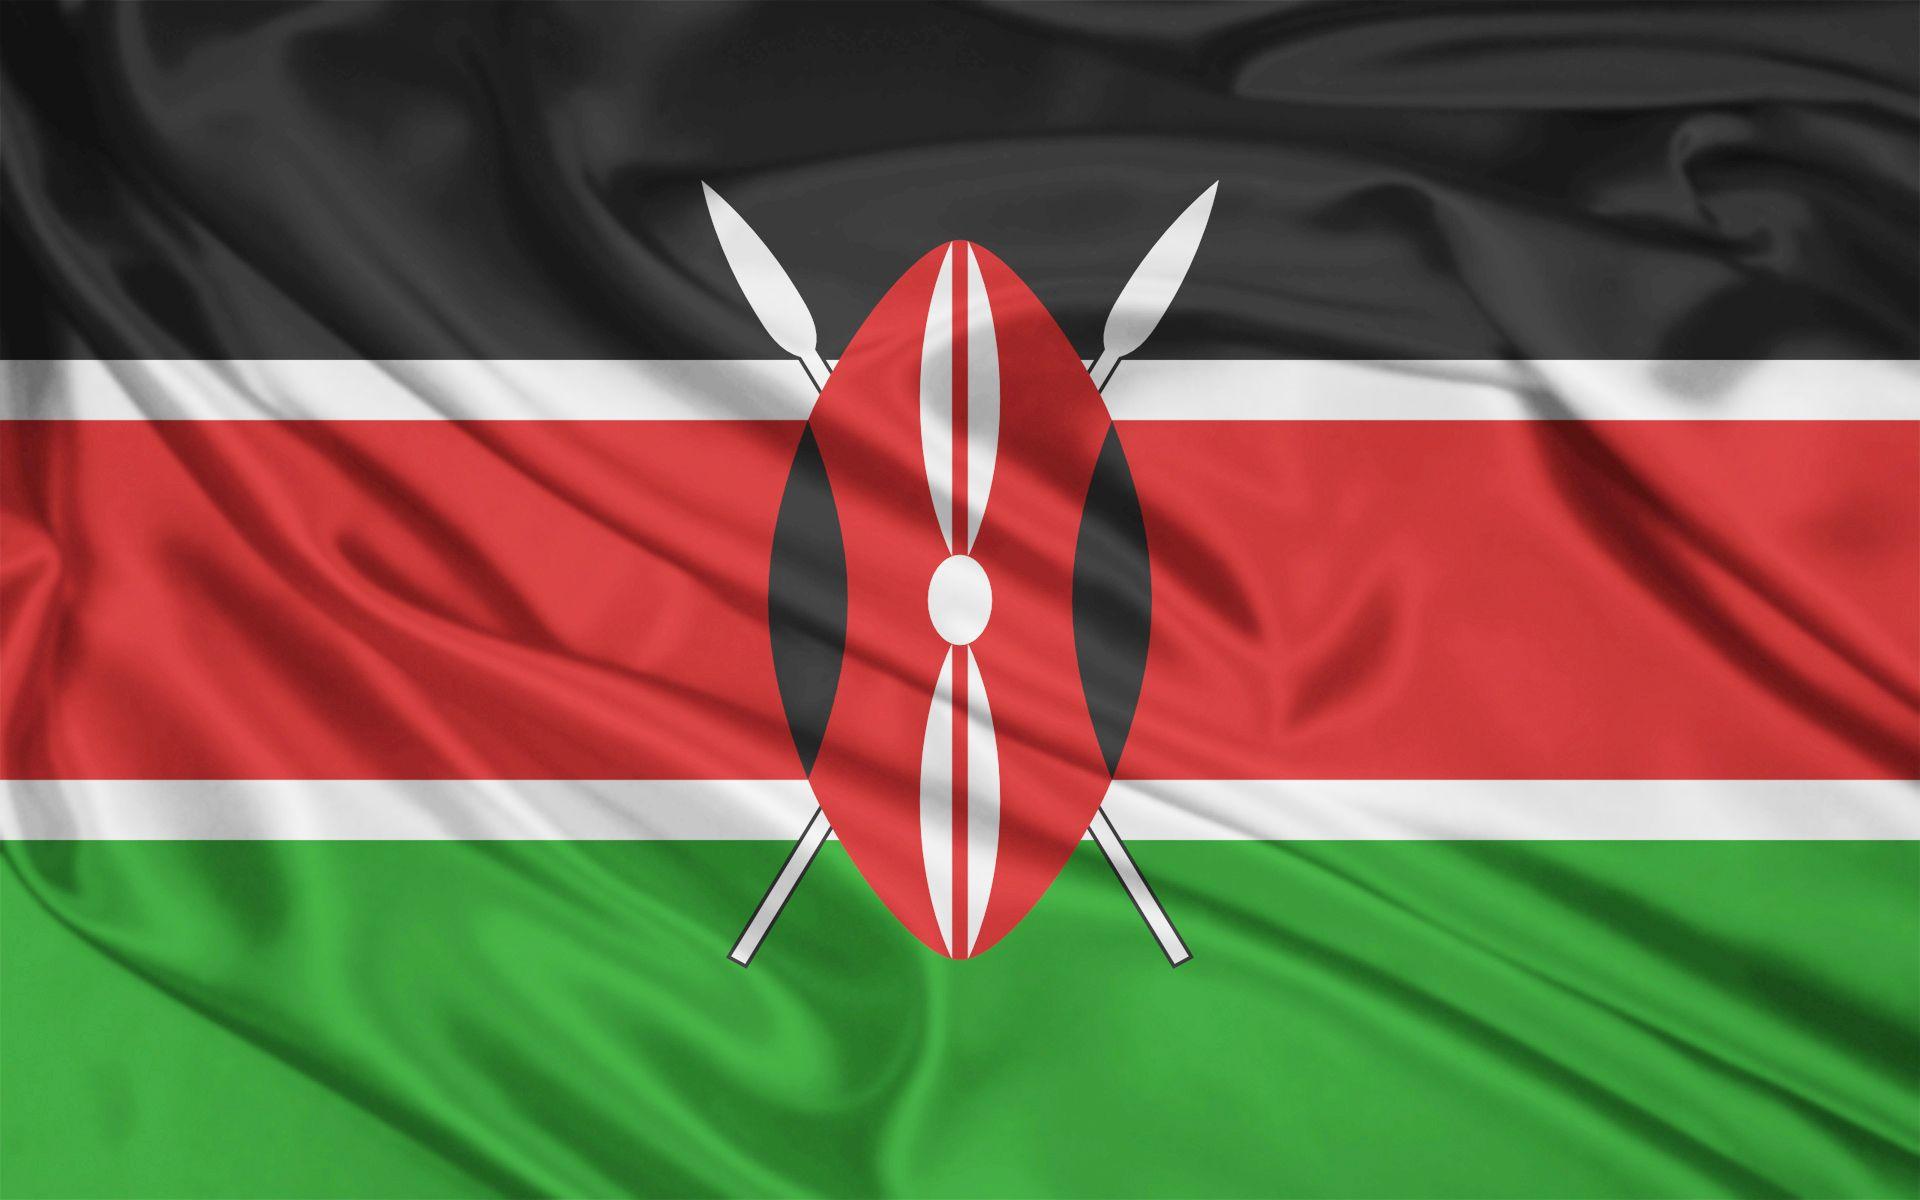 dahabshiil forex bureau kenya flag